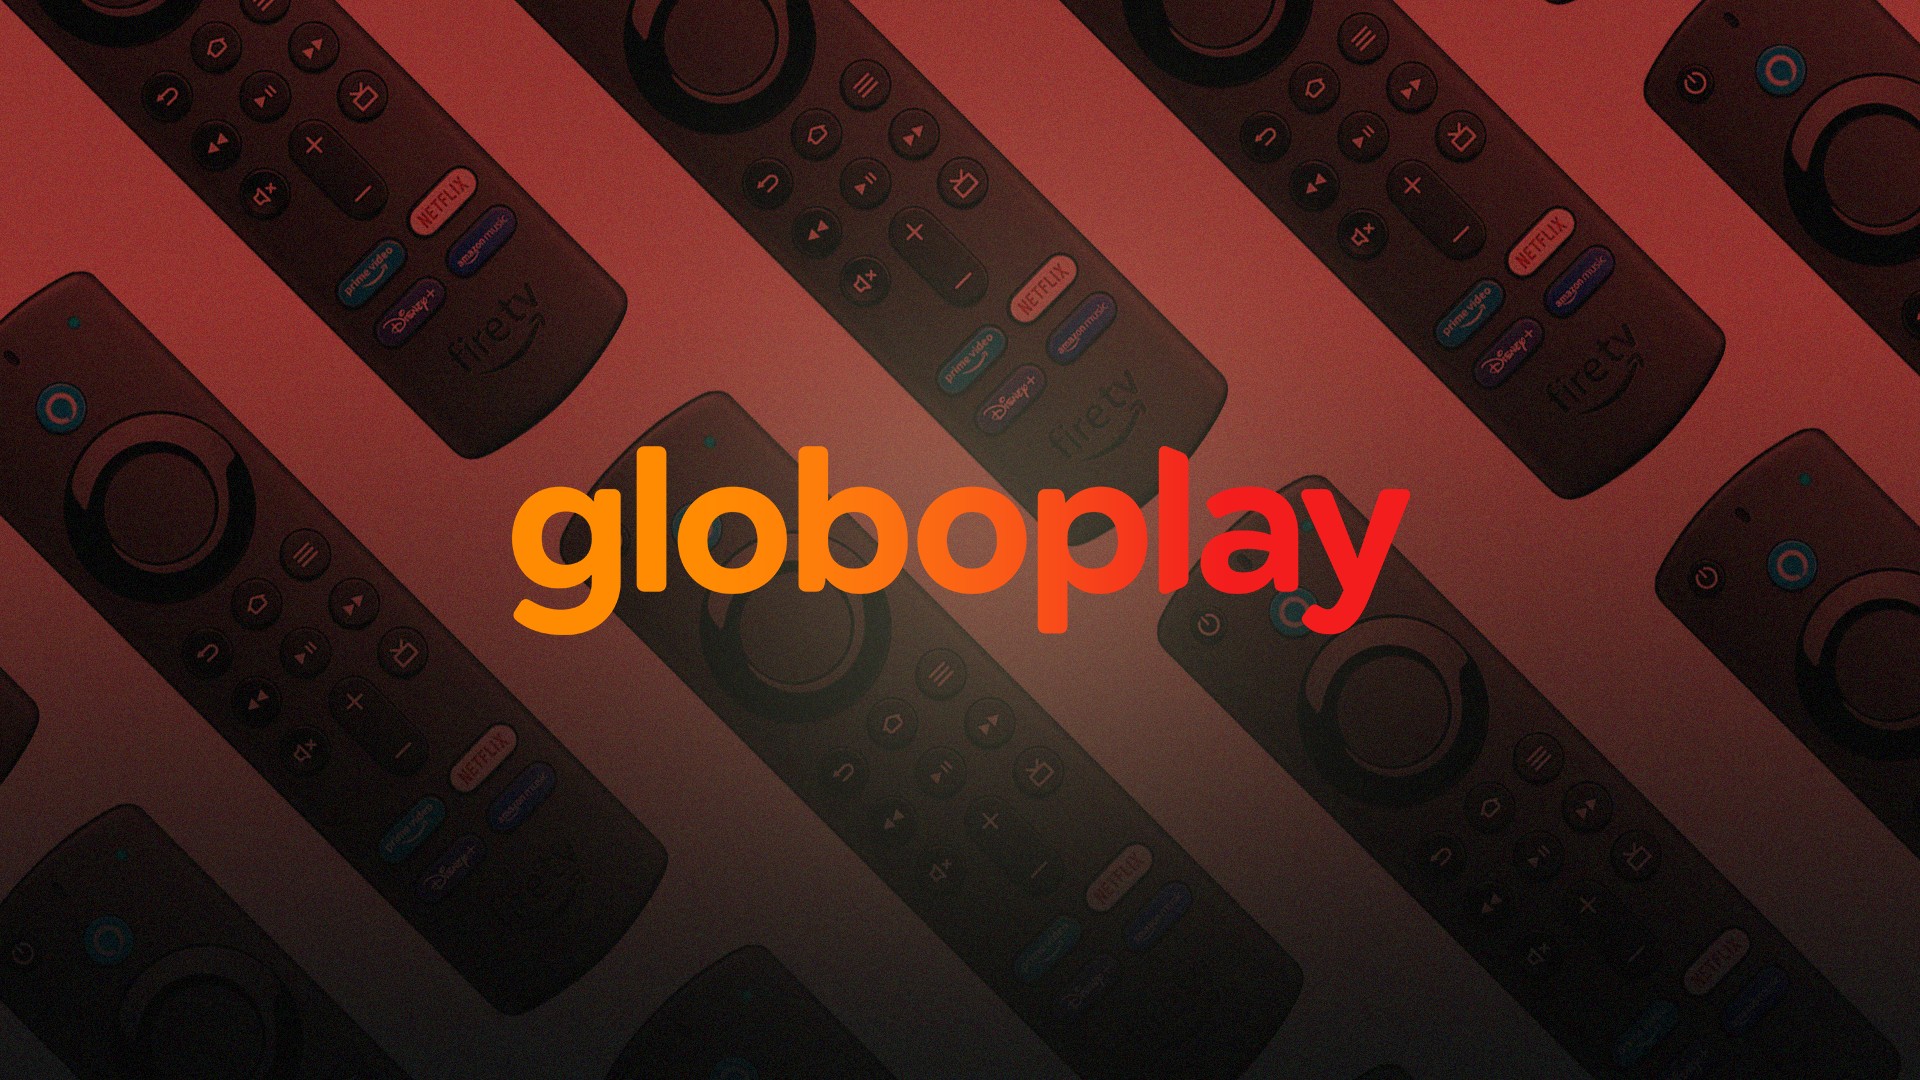 Vivo começa a oferecer conteúdo do Globoplay para seus clientes